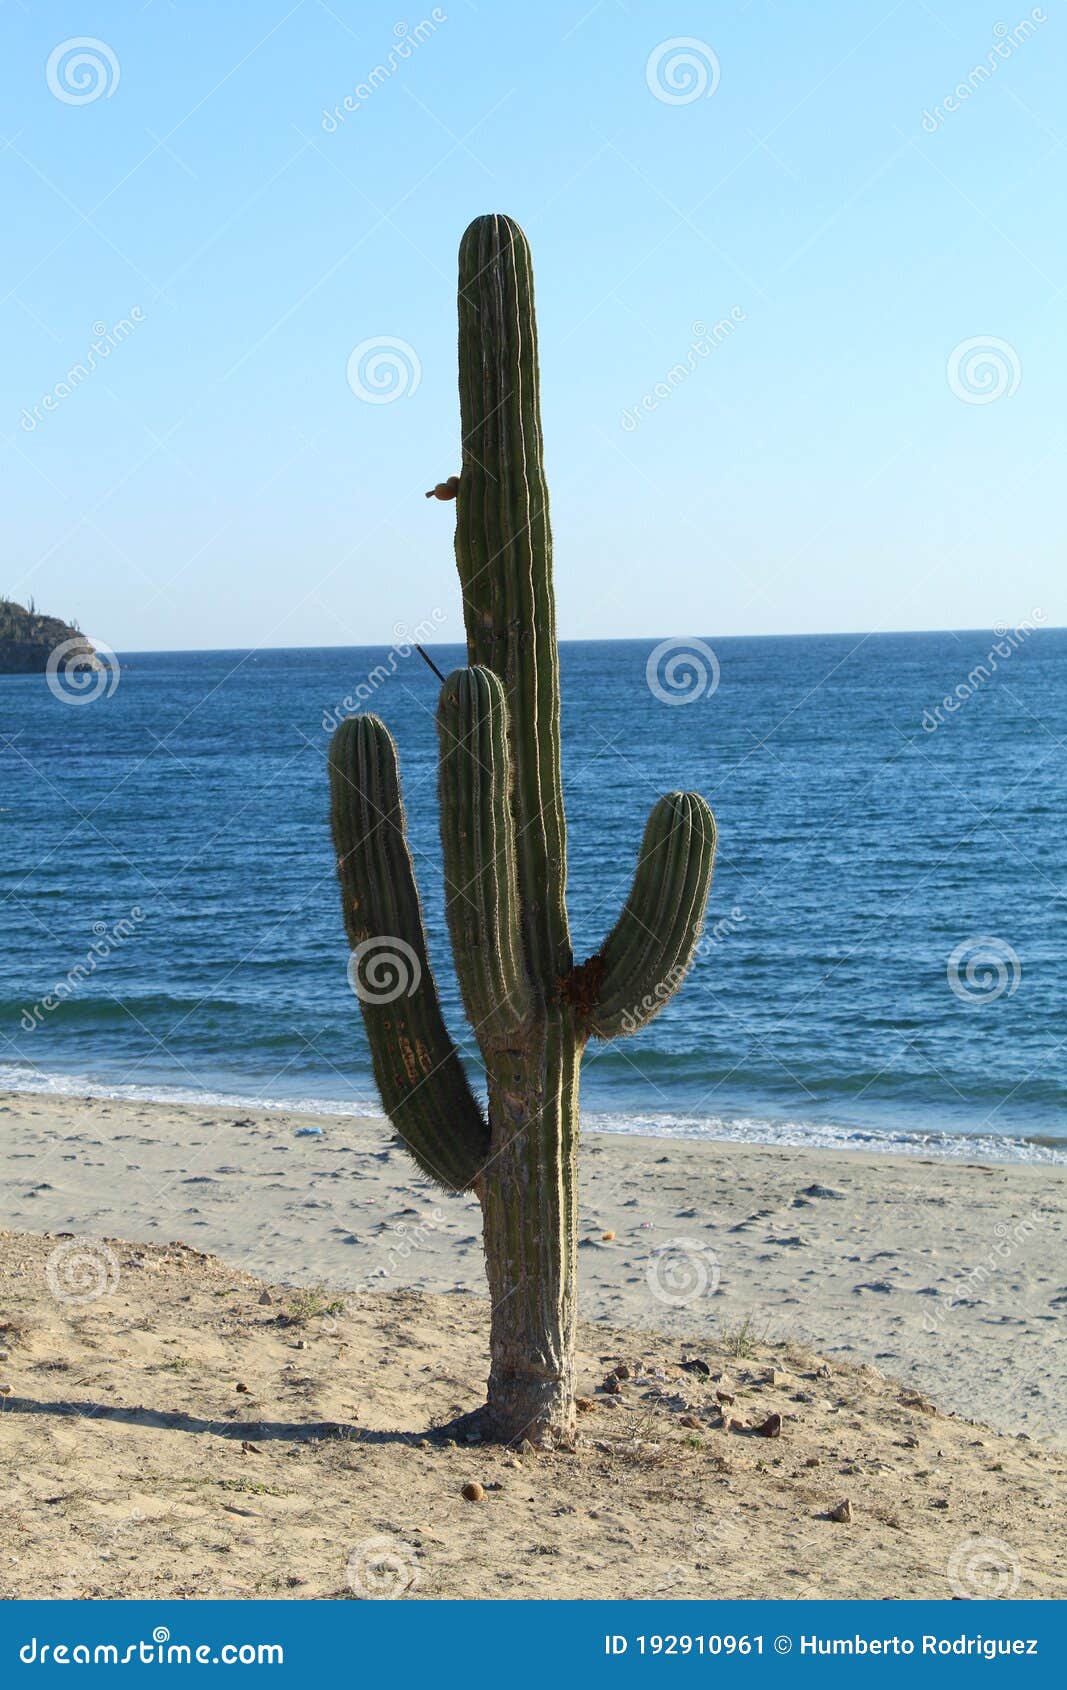 sahuaro cactus on front of the sea